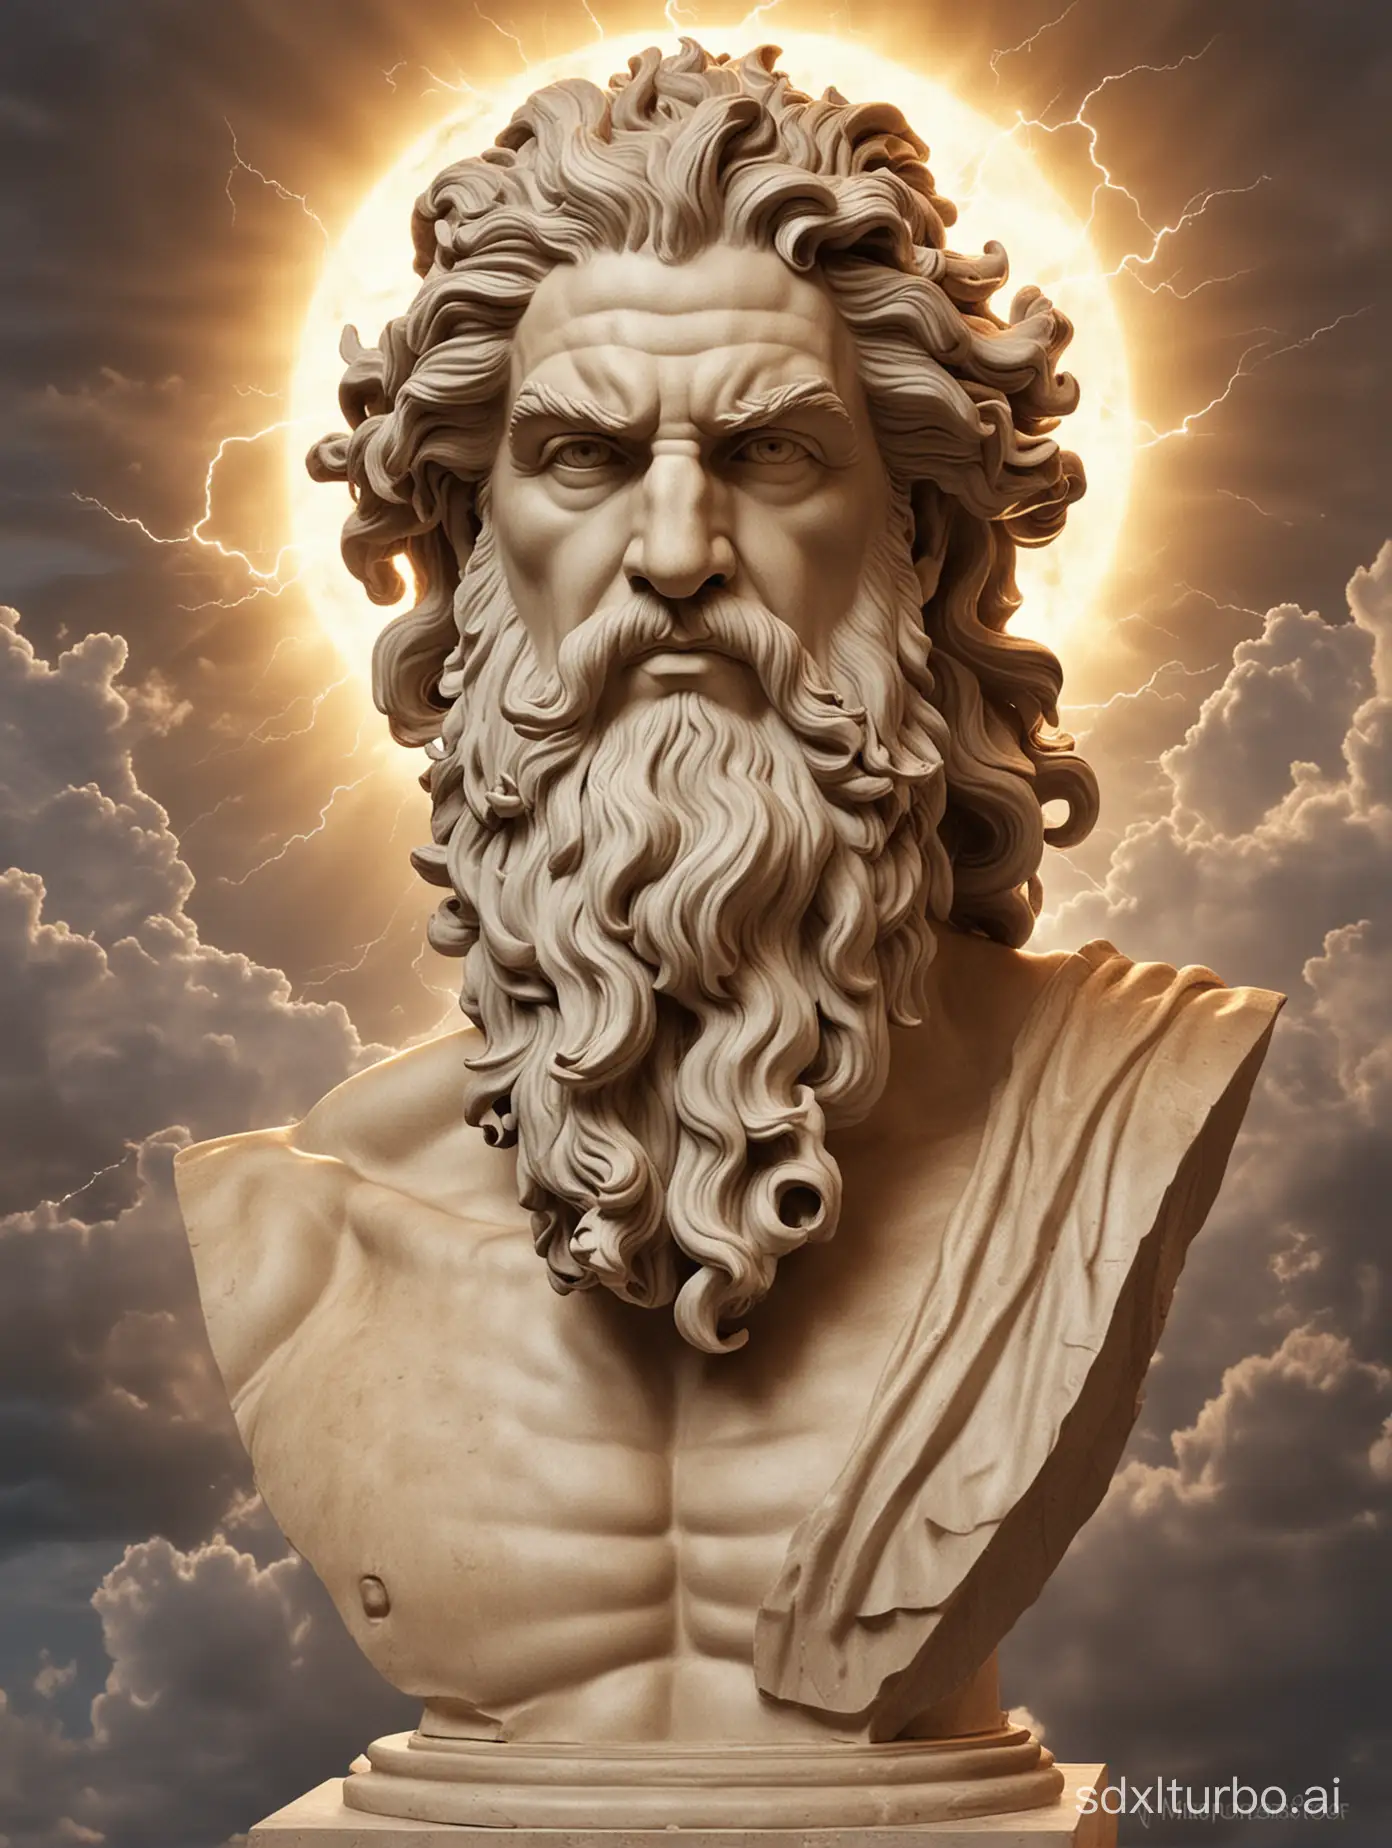 Majestic-Portrait-of-Zeus-the-Mighty-Greek-God